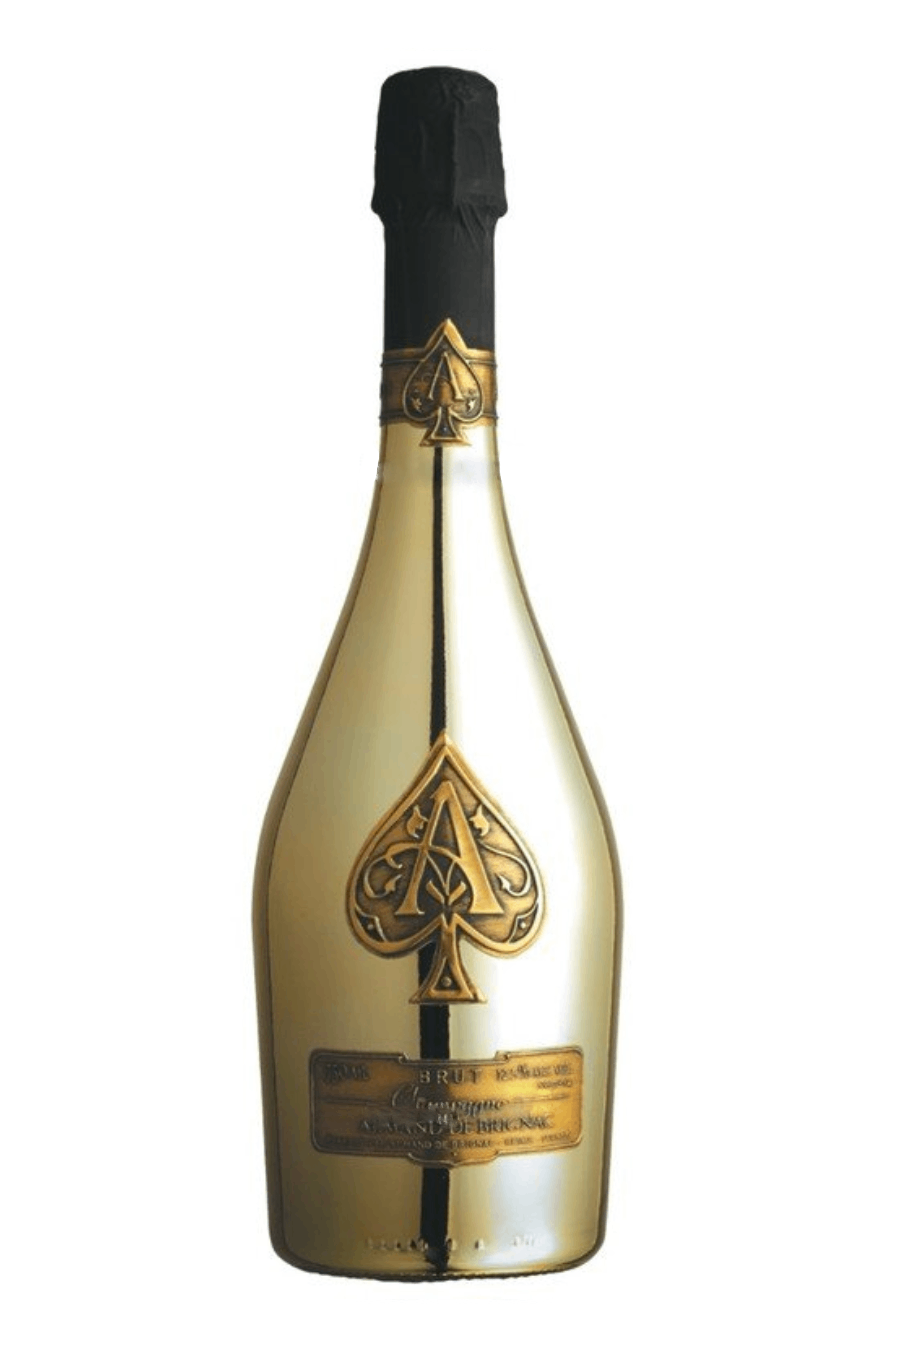 Armand De Brignac Ace of Spades Champagne Bottle Black Case (Case ONLY)